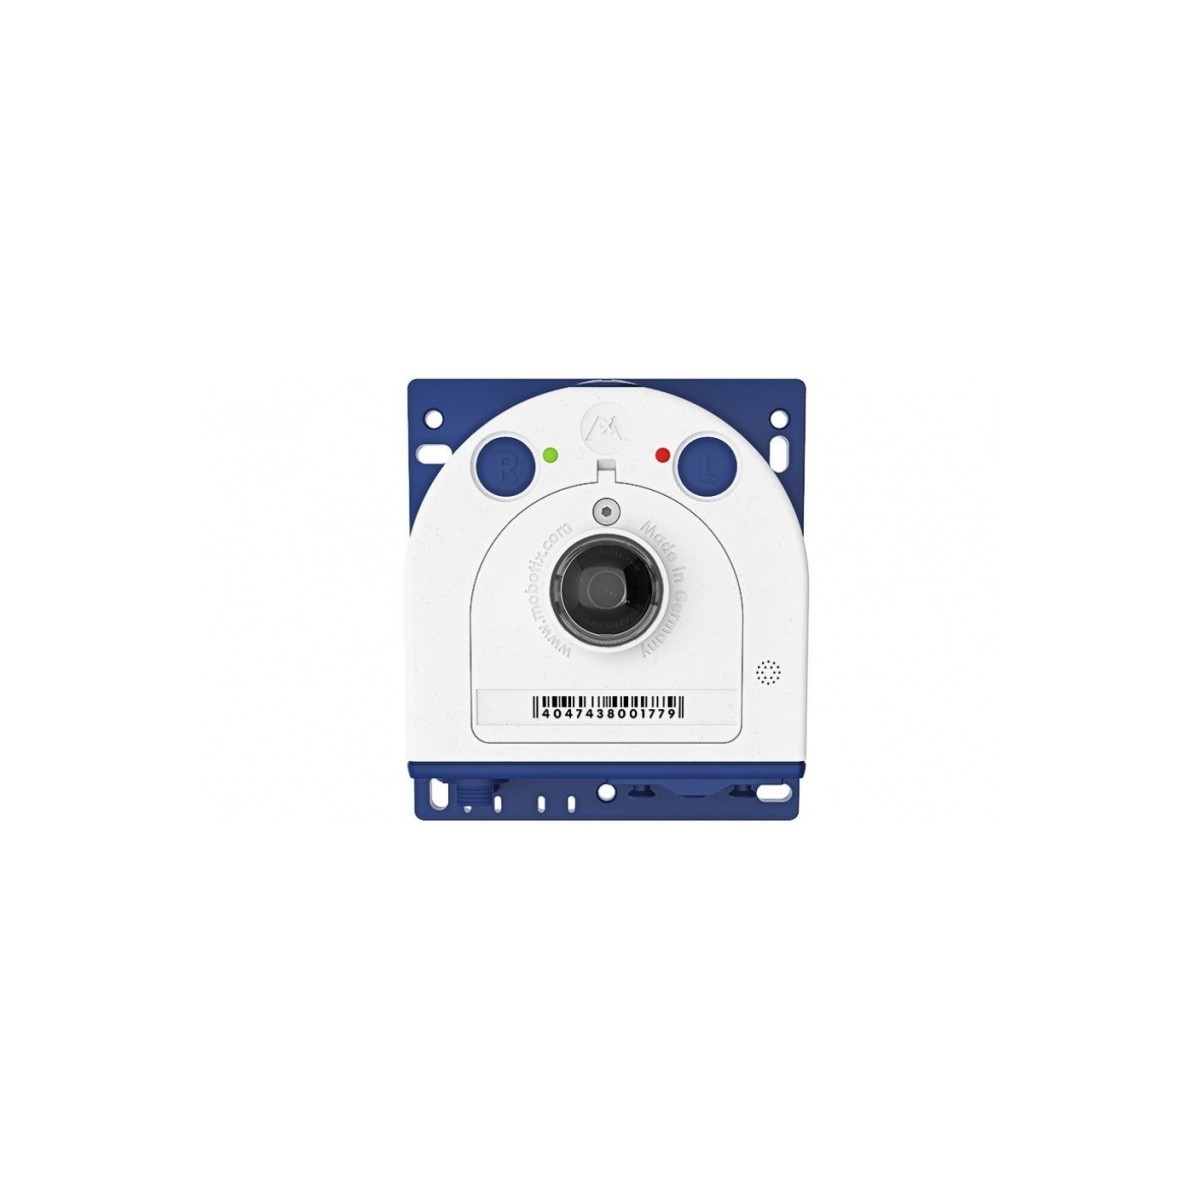 Mobotix S26B - IP security camera - Indoor & outdoor - Wired - EN55022:2010; EN55024:2010; EN50121-4:2006 EN61000-6-1:2007; EN 6